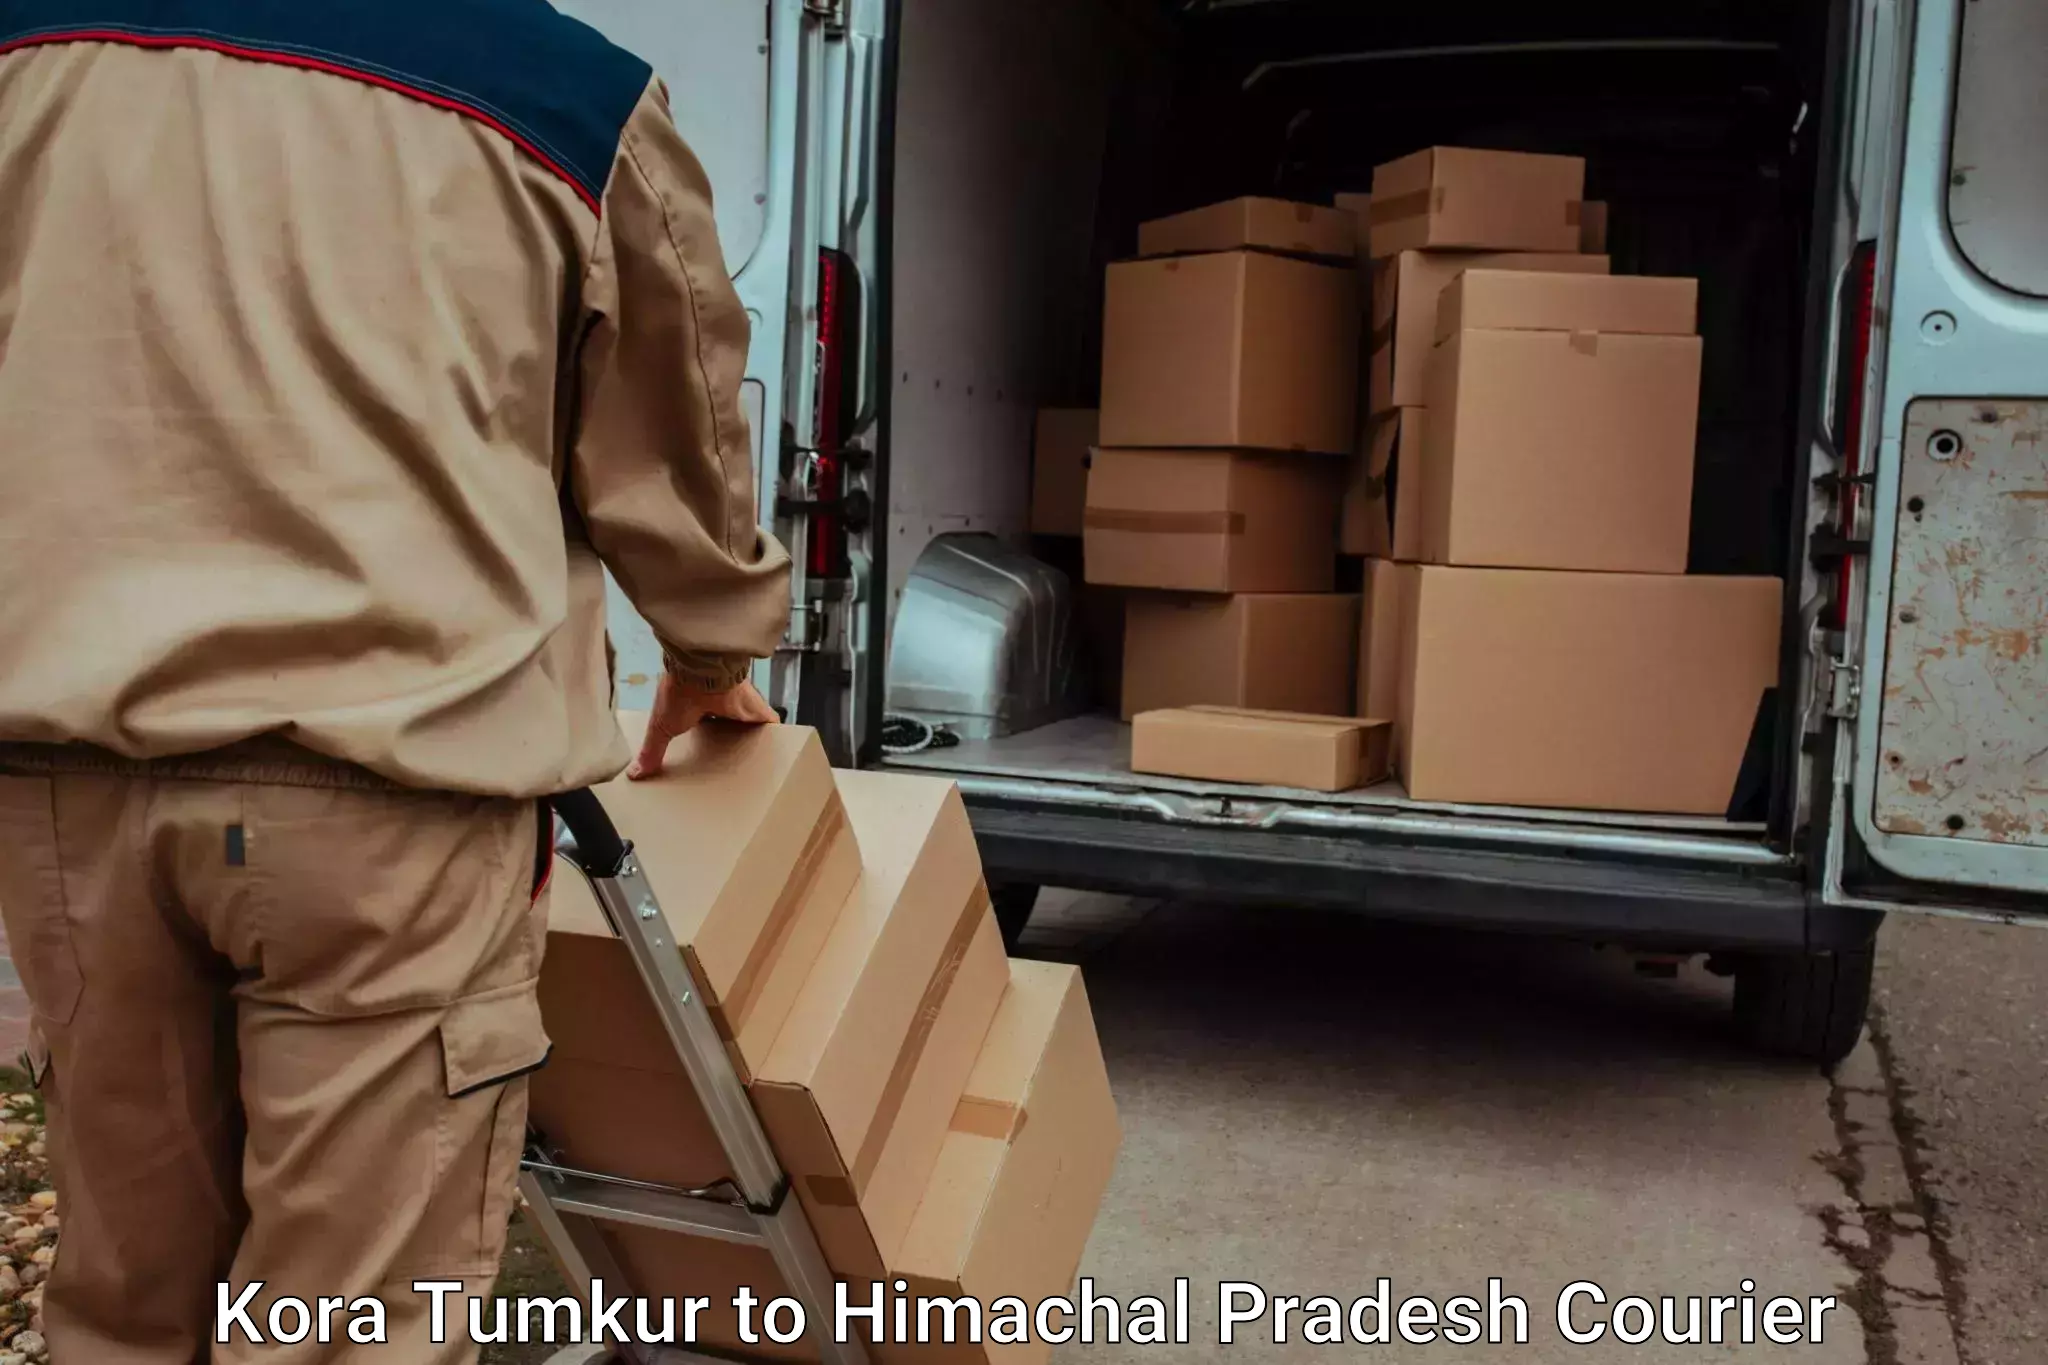 Automated luggage transport in Kora Tumkur to Jukhala